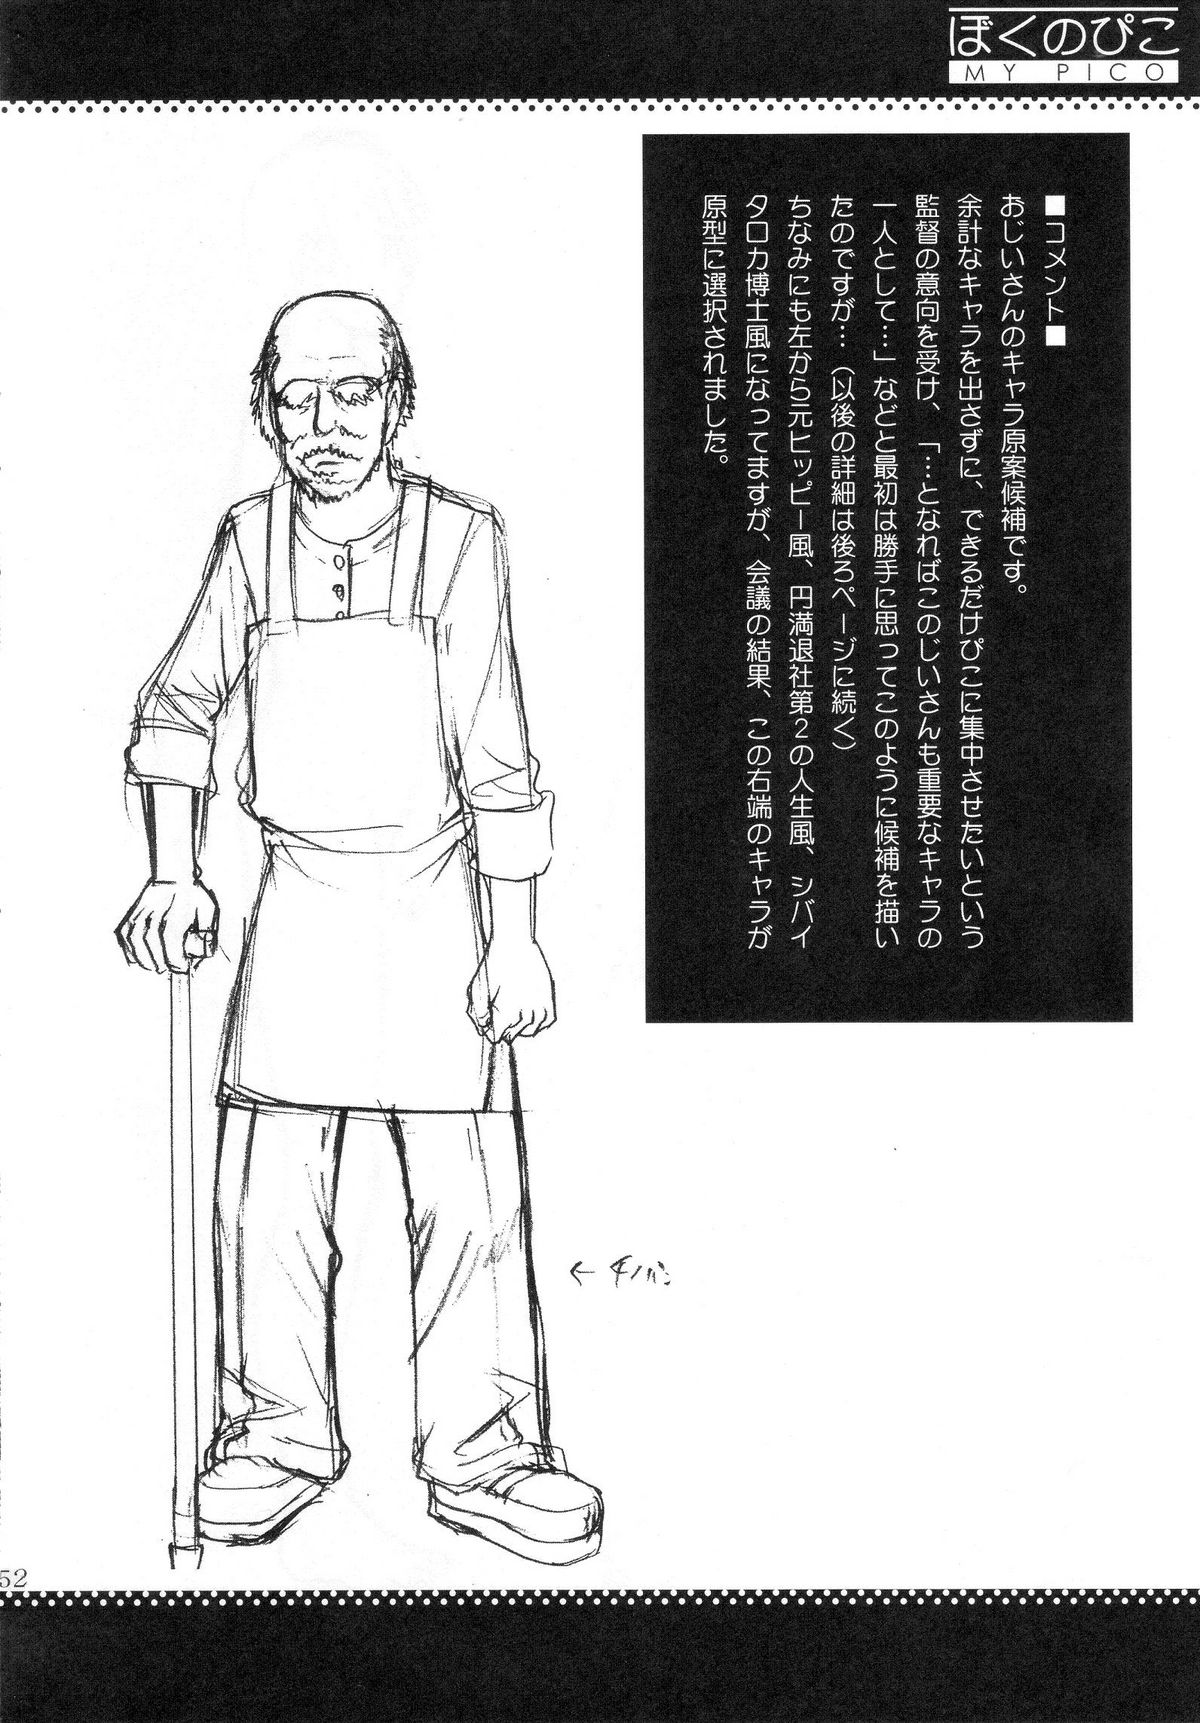 (COMIC1) [Saigado] Boku no Pico Comic + Koushiki Character Genanshuu (Boku no Pico) page 50 full